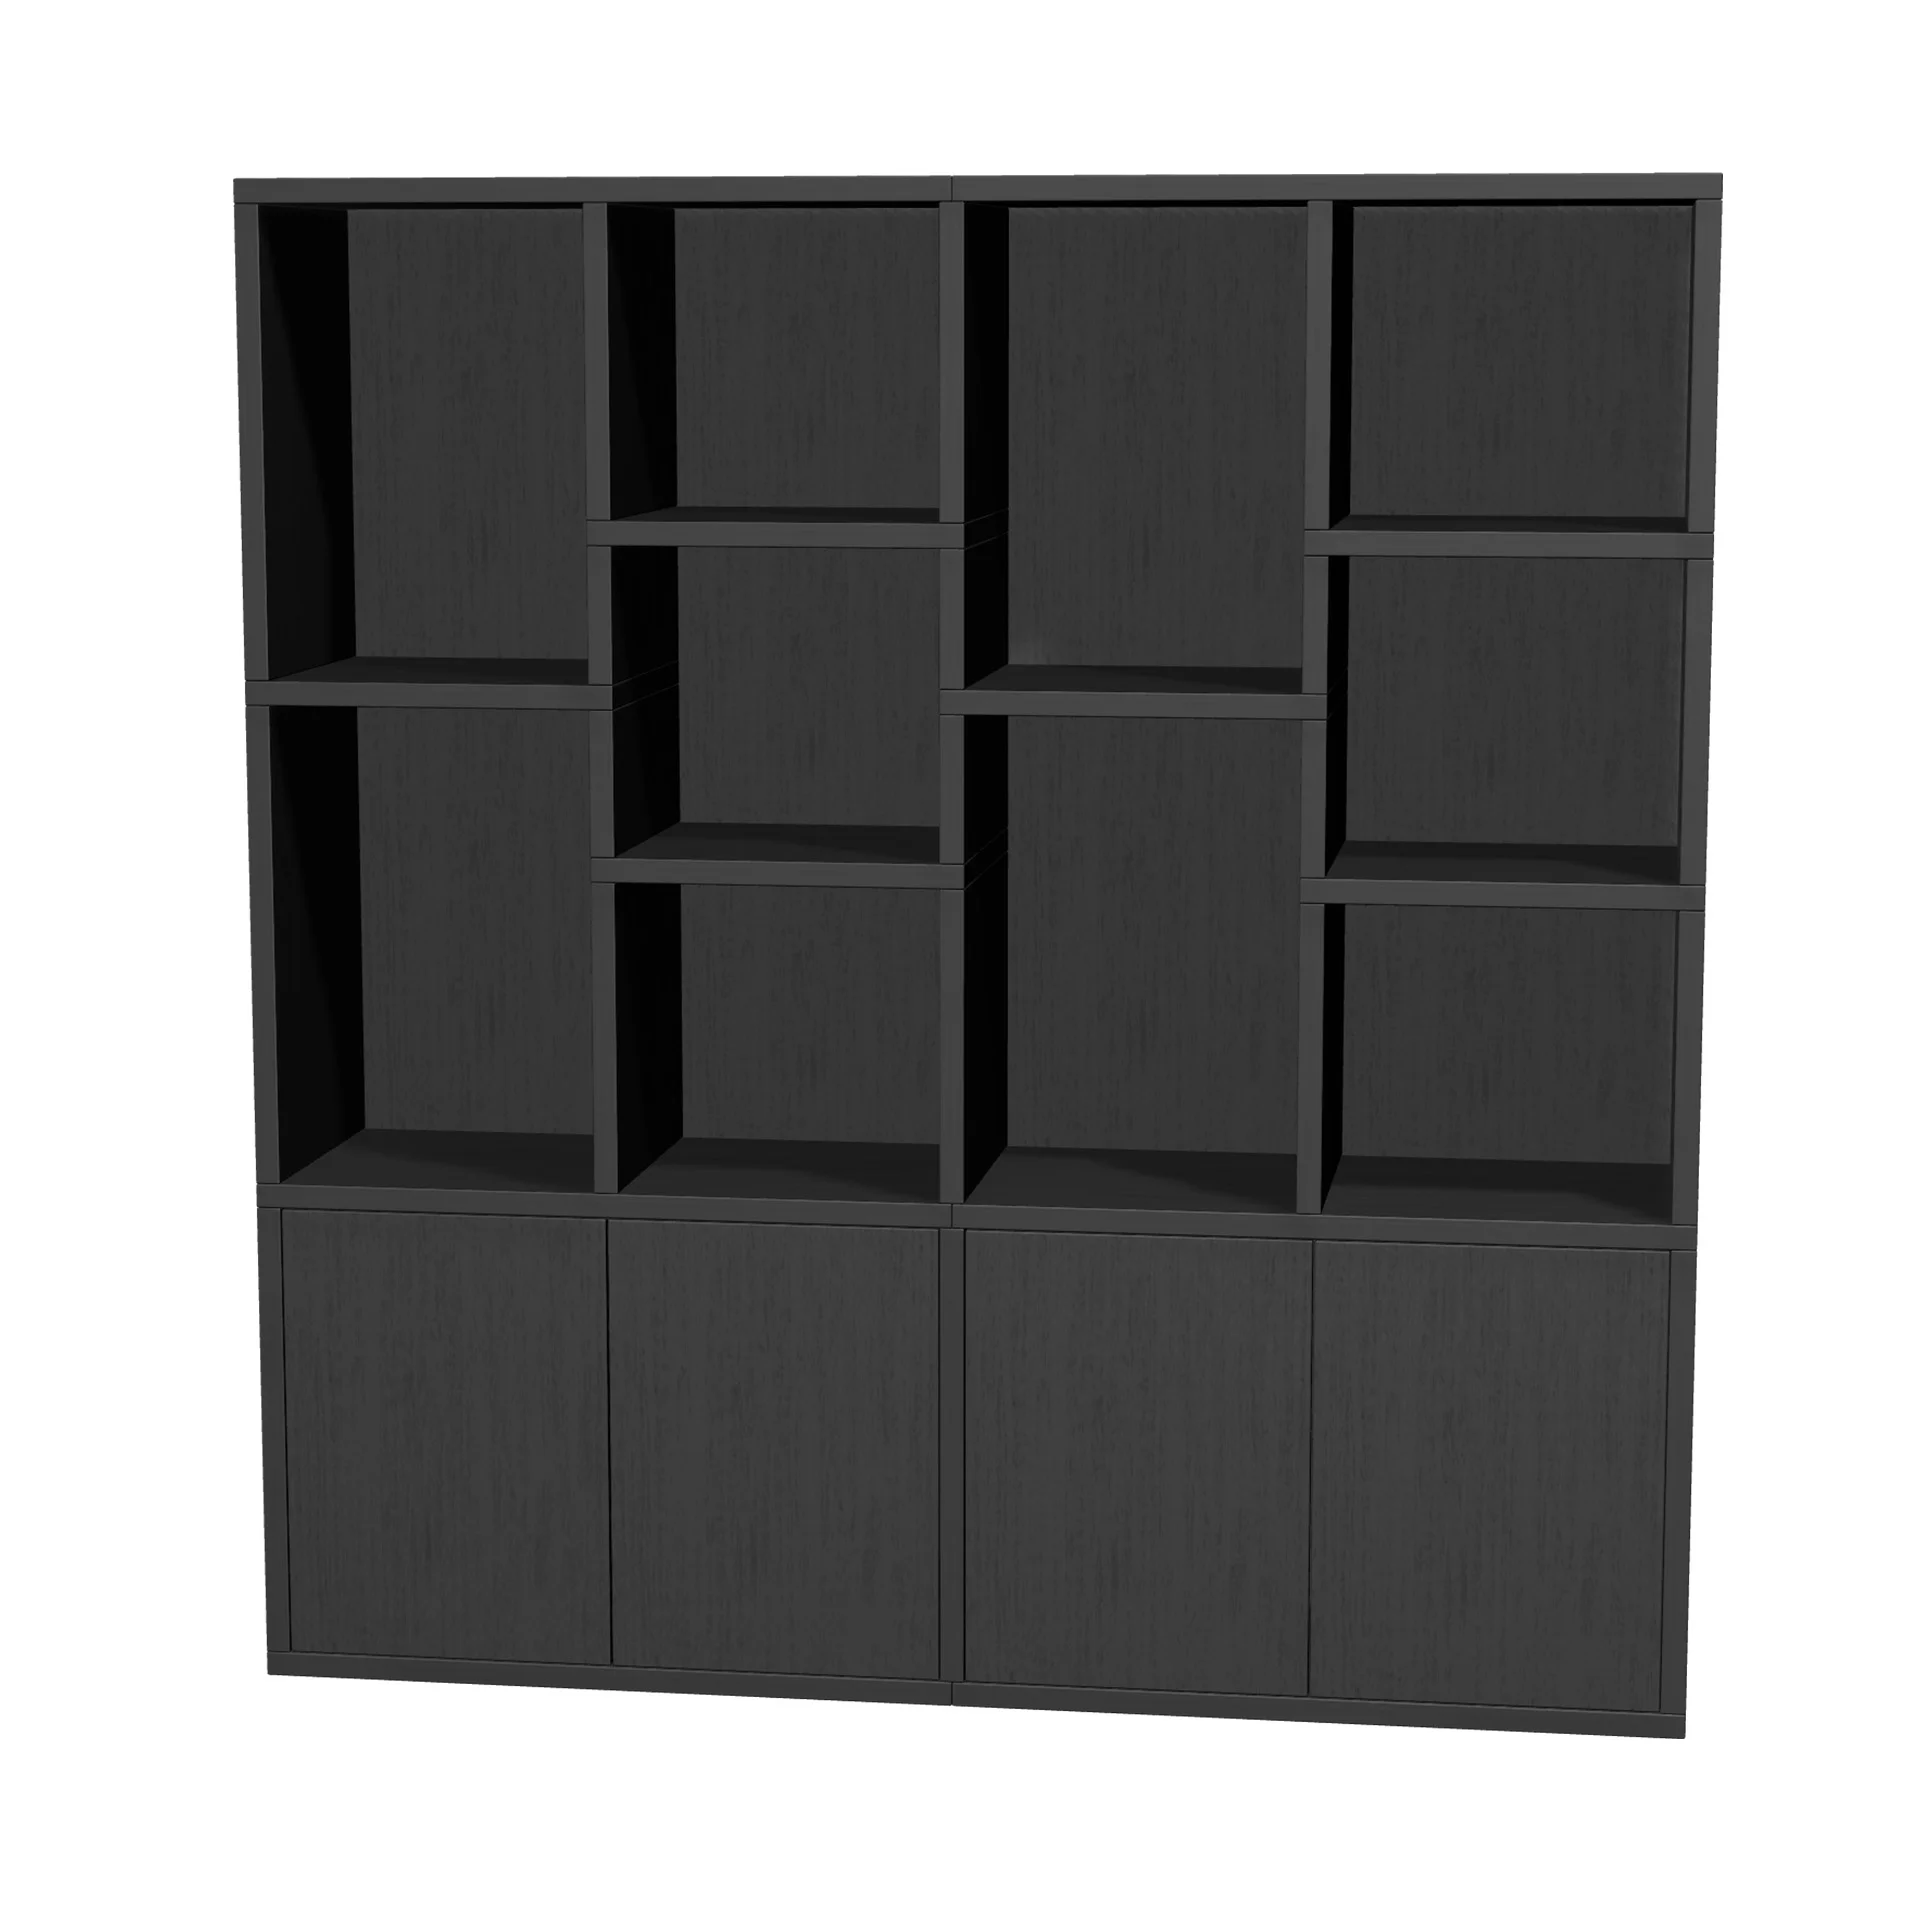 TSFC047 in black oak furniture board